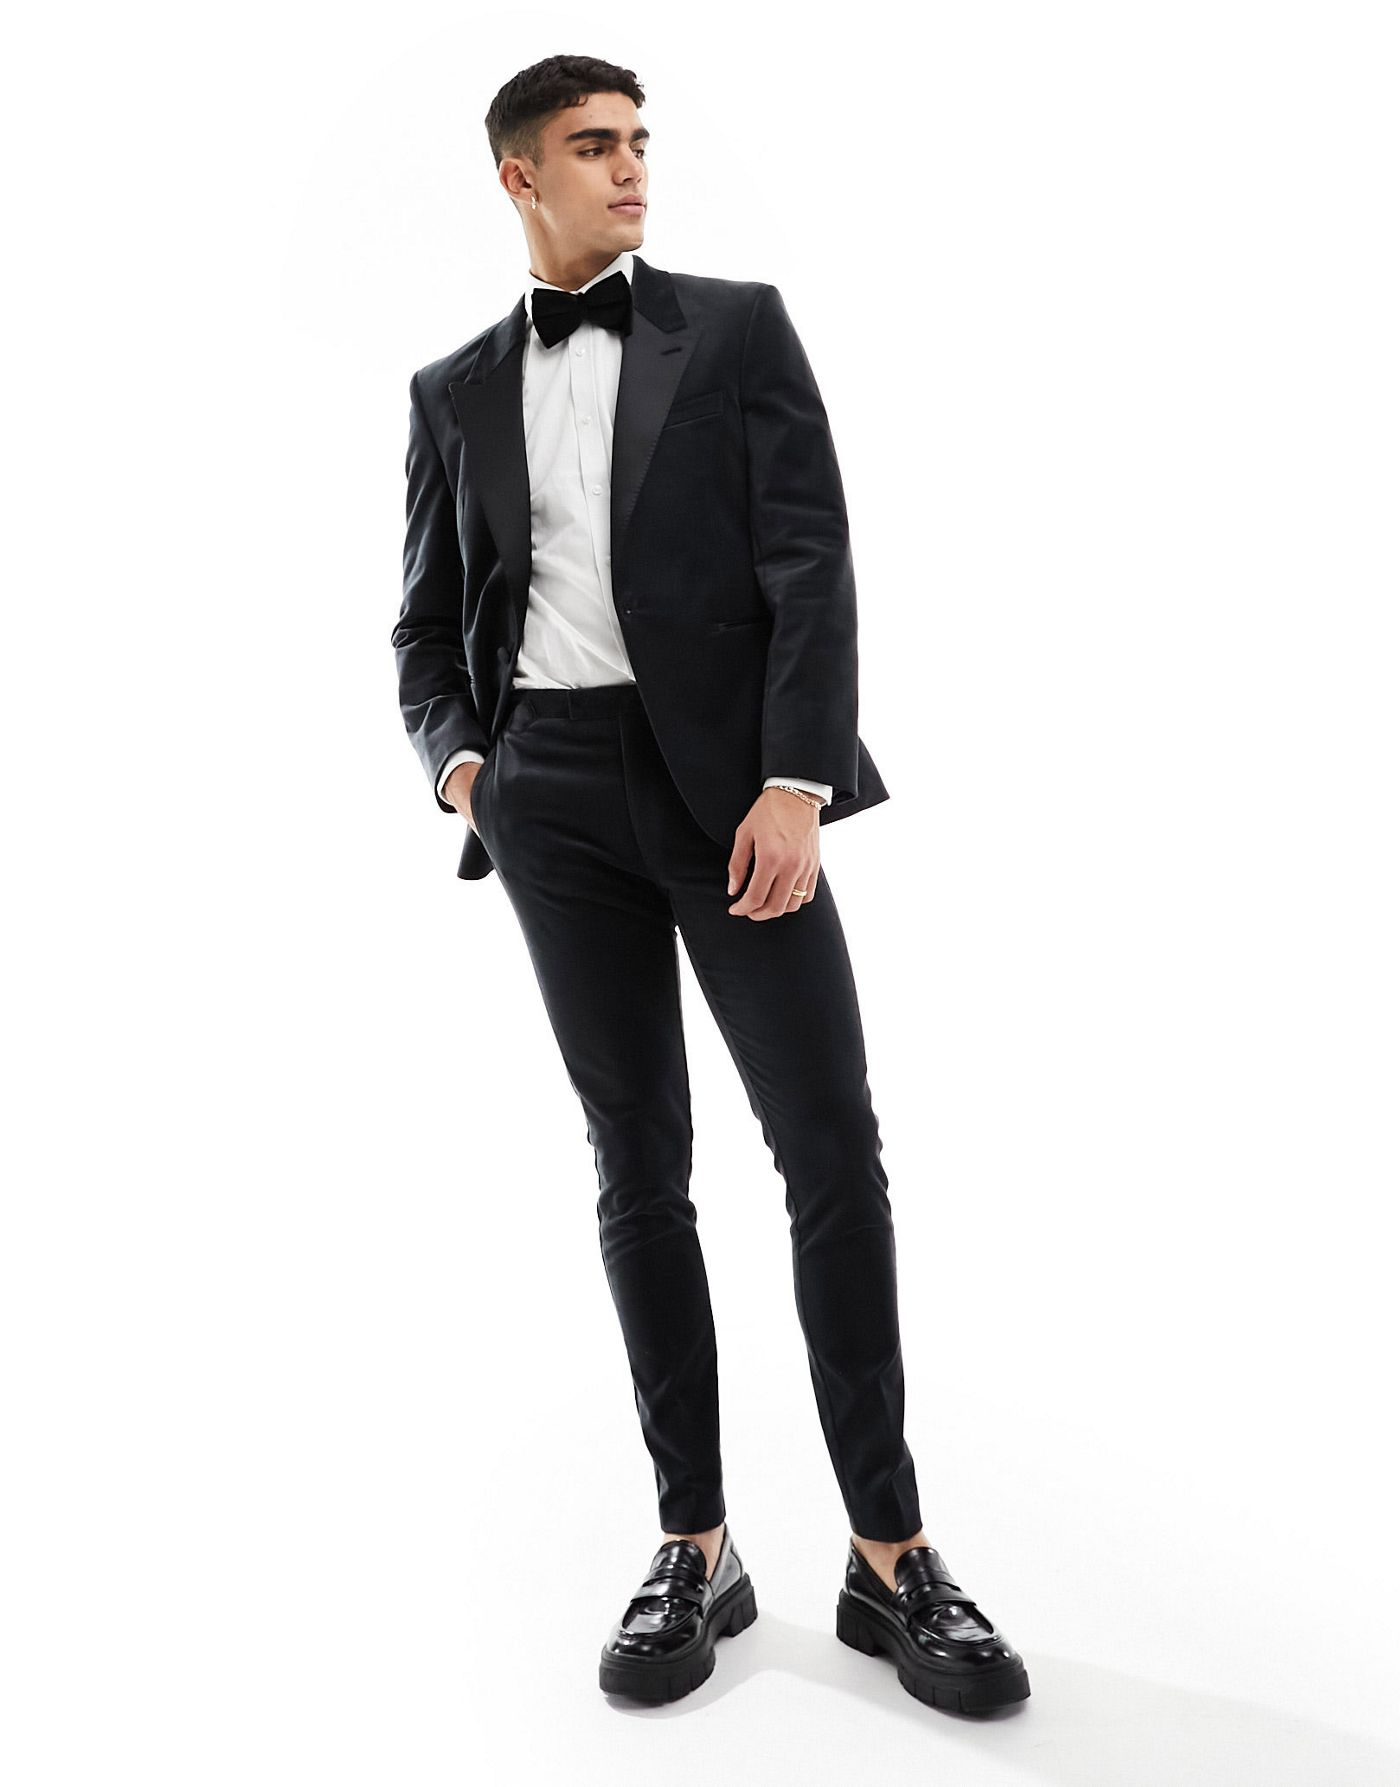 ASOS DESIGN skinny tuxedo suit jacket in black velvet